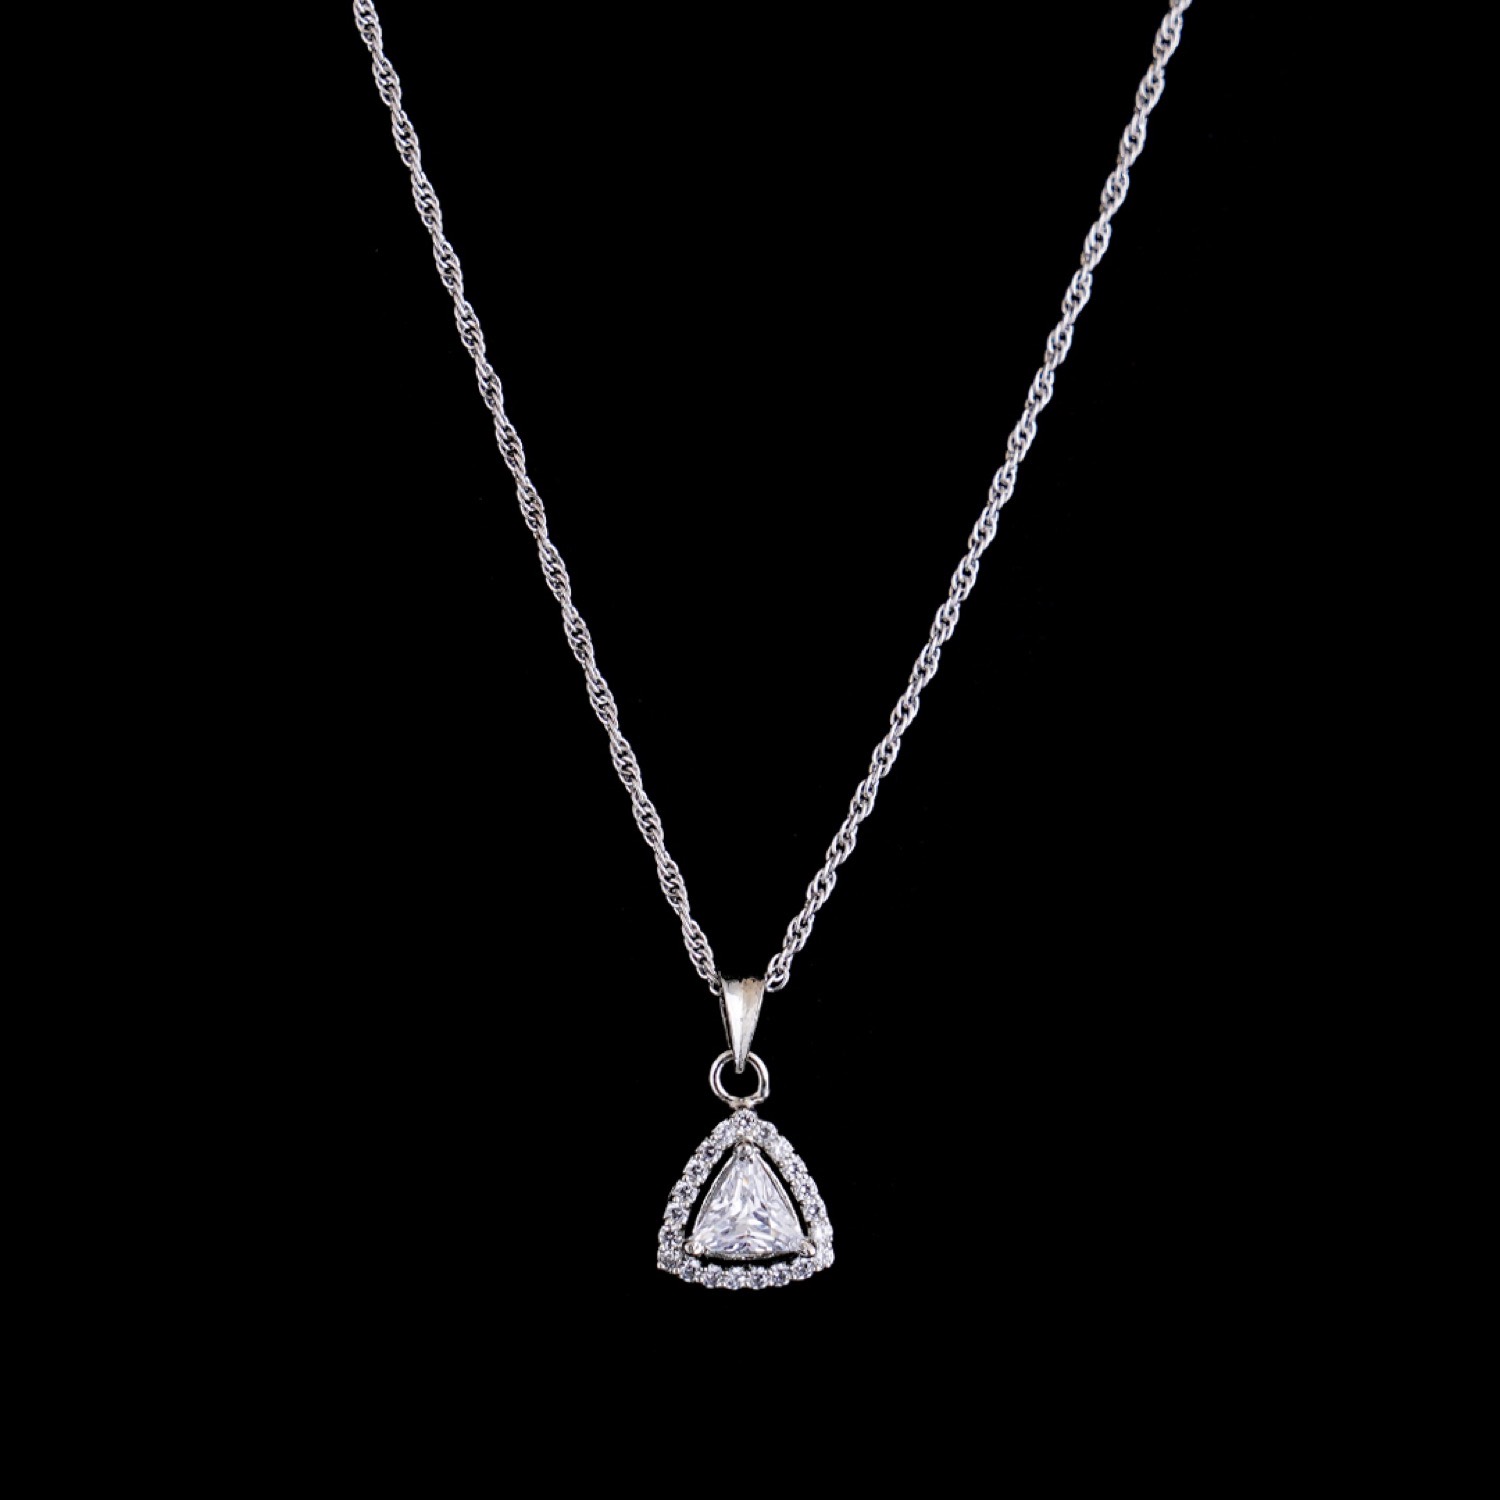 varam_swarovski_white_stone_triangle_design_pendant_silver_chain_1-1